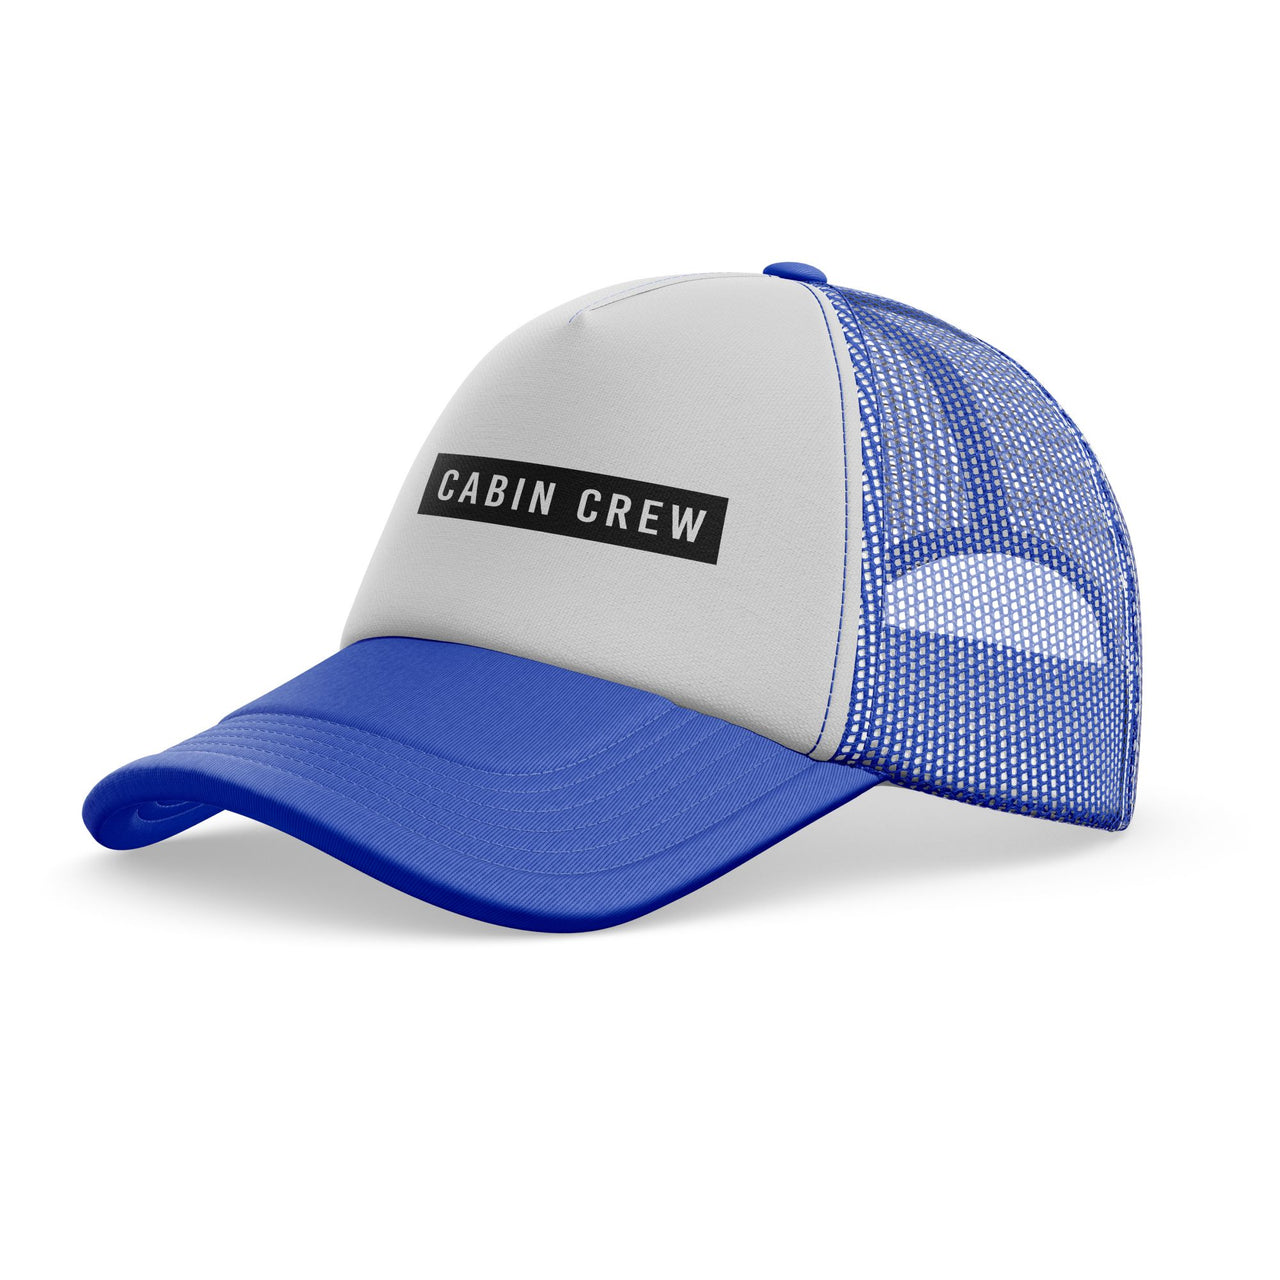 Cabin Crew Text Designed Trucker Caps & Hats